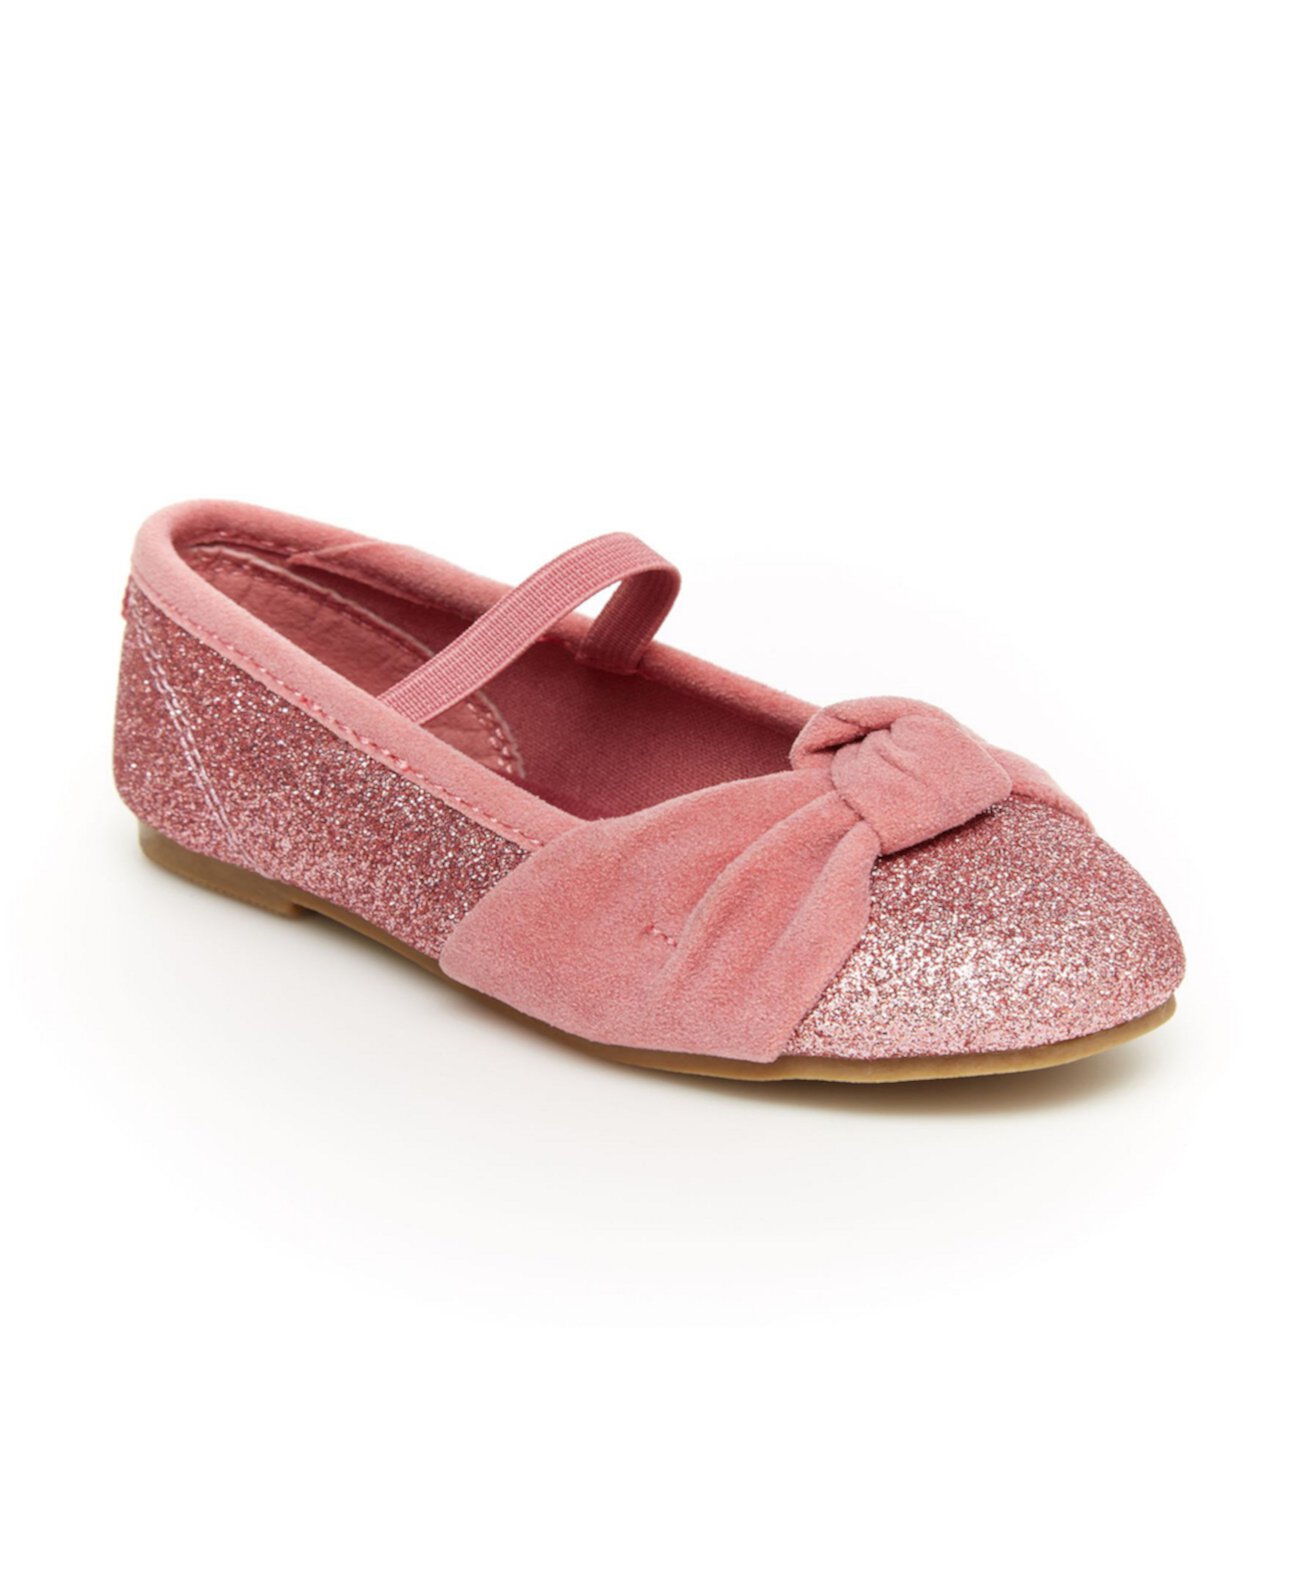 Модельная обувь для маленьких девочек Carter's